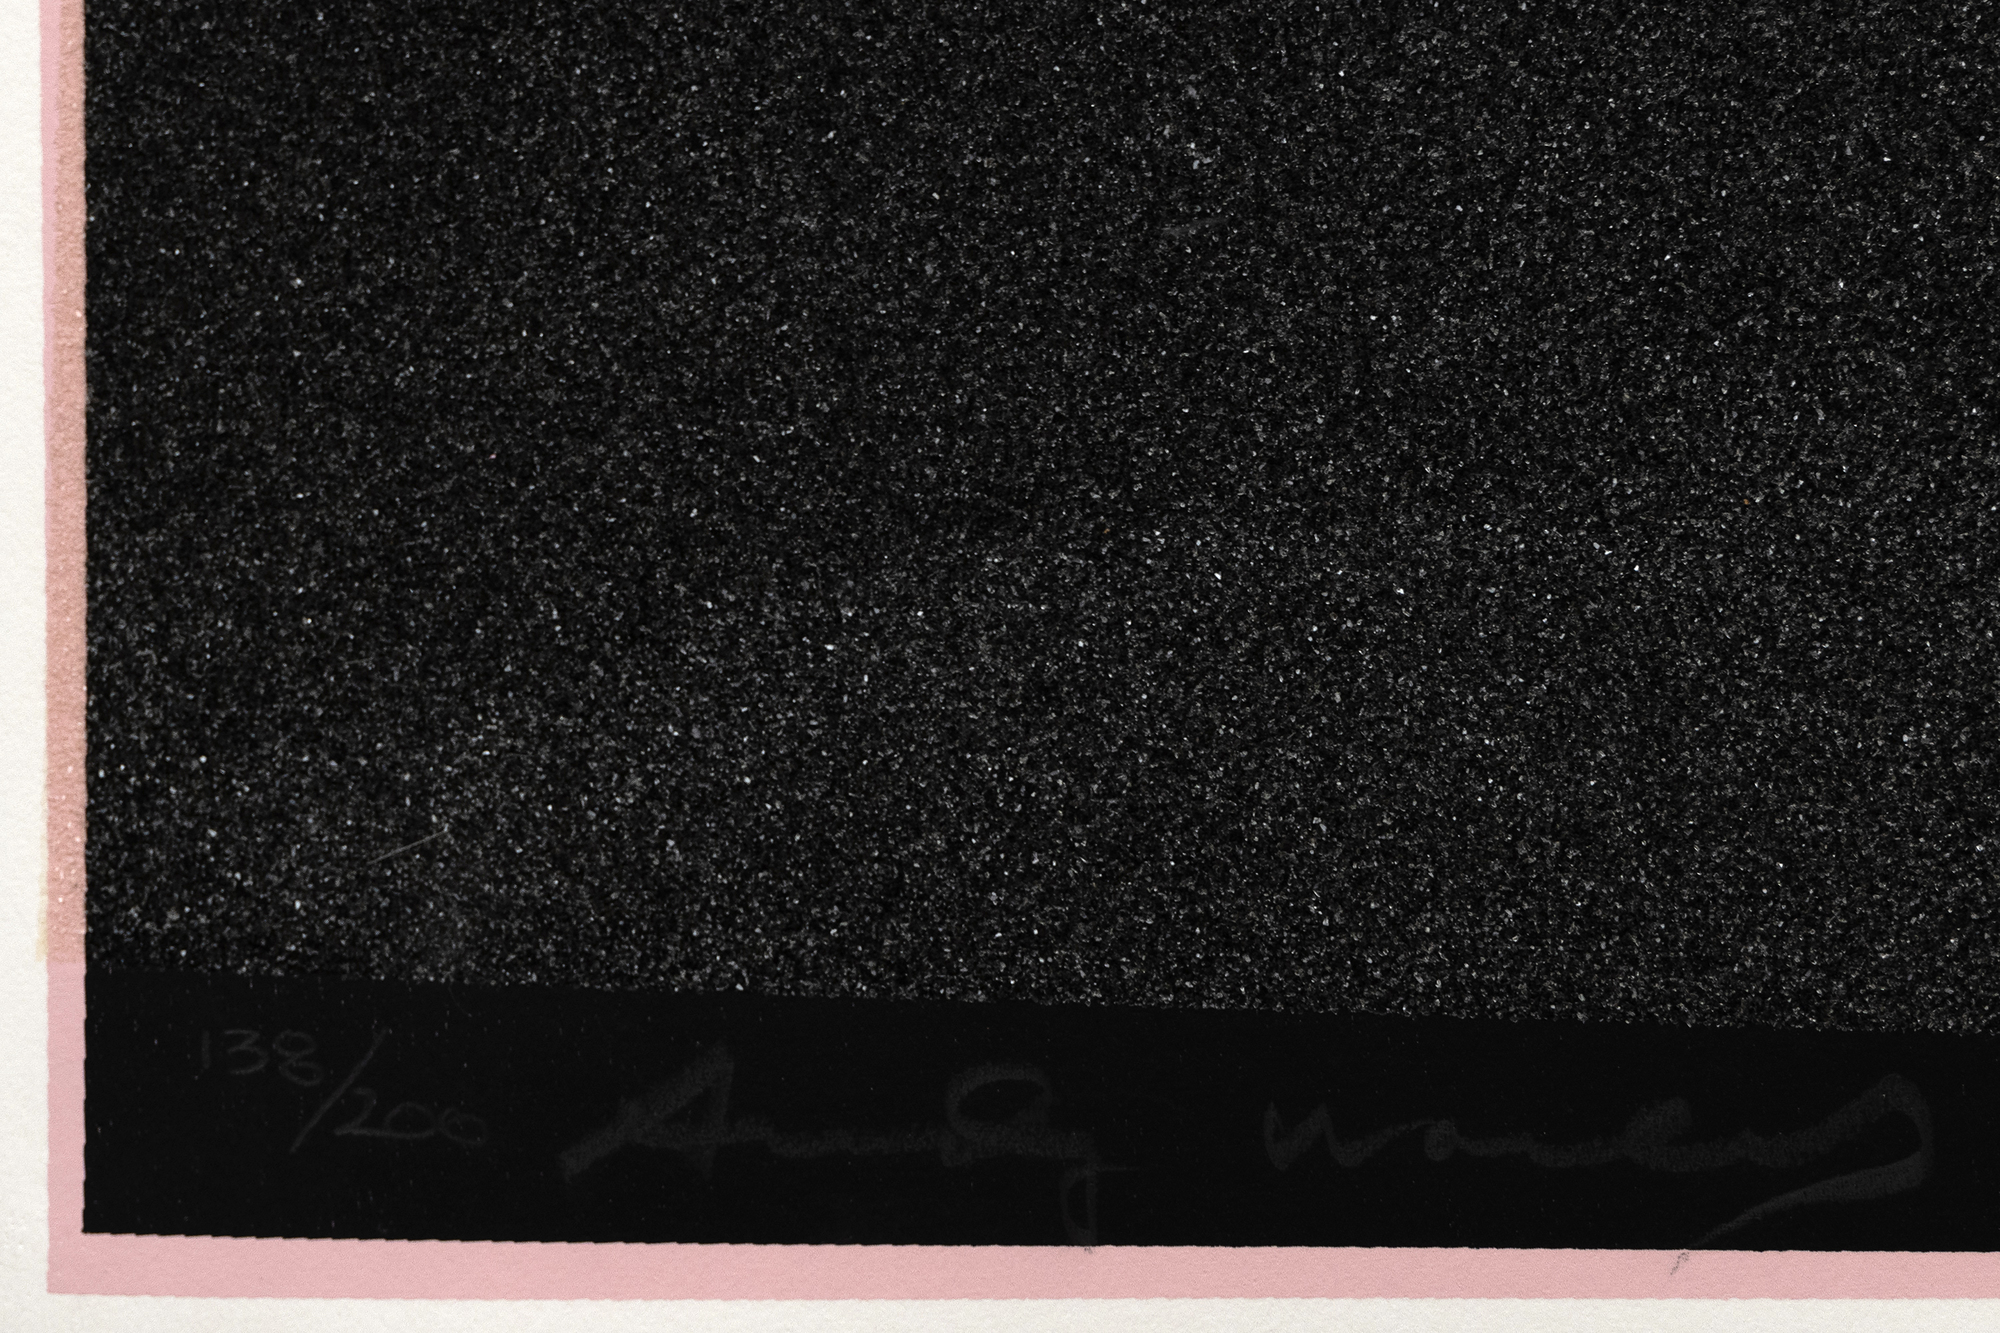 آندي وارهول - ميكي (II.265) - بصمة شاشة مع غبار الماس - 38 × 38 بوصة.